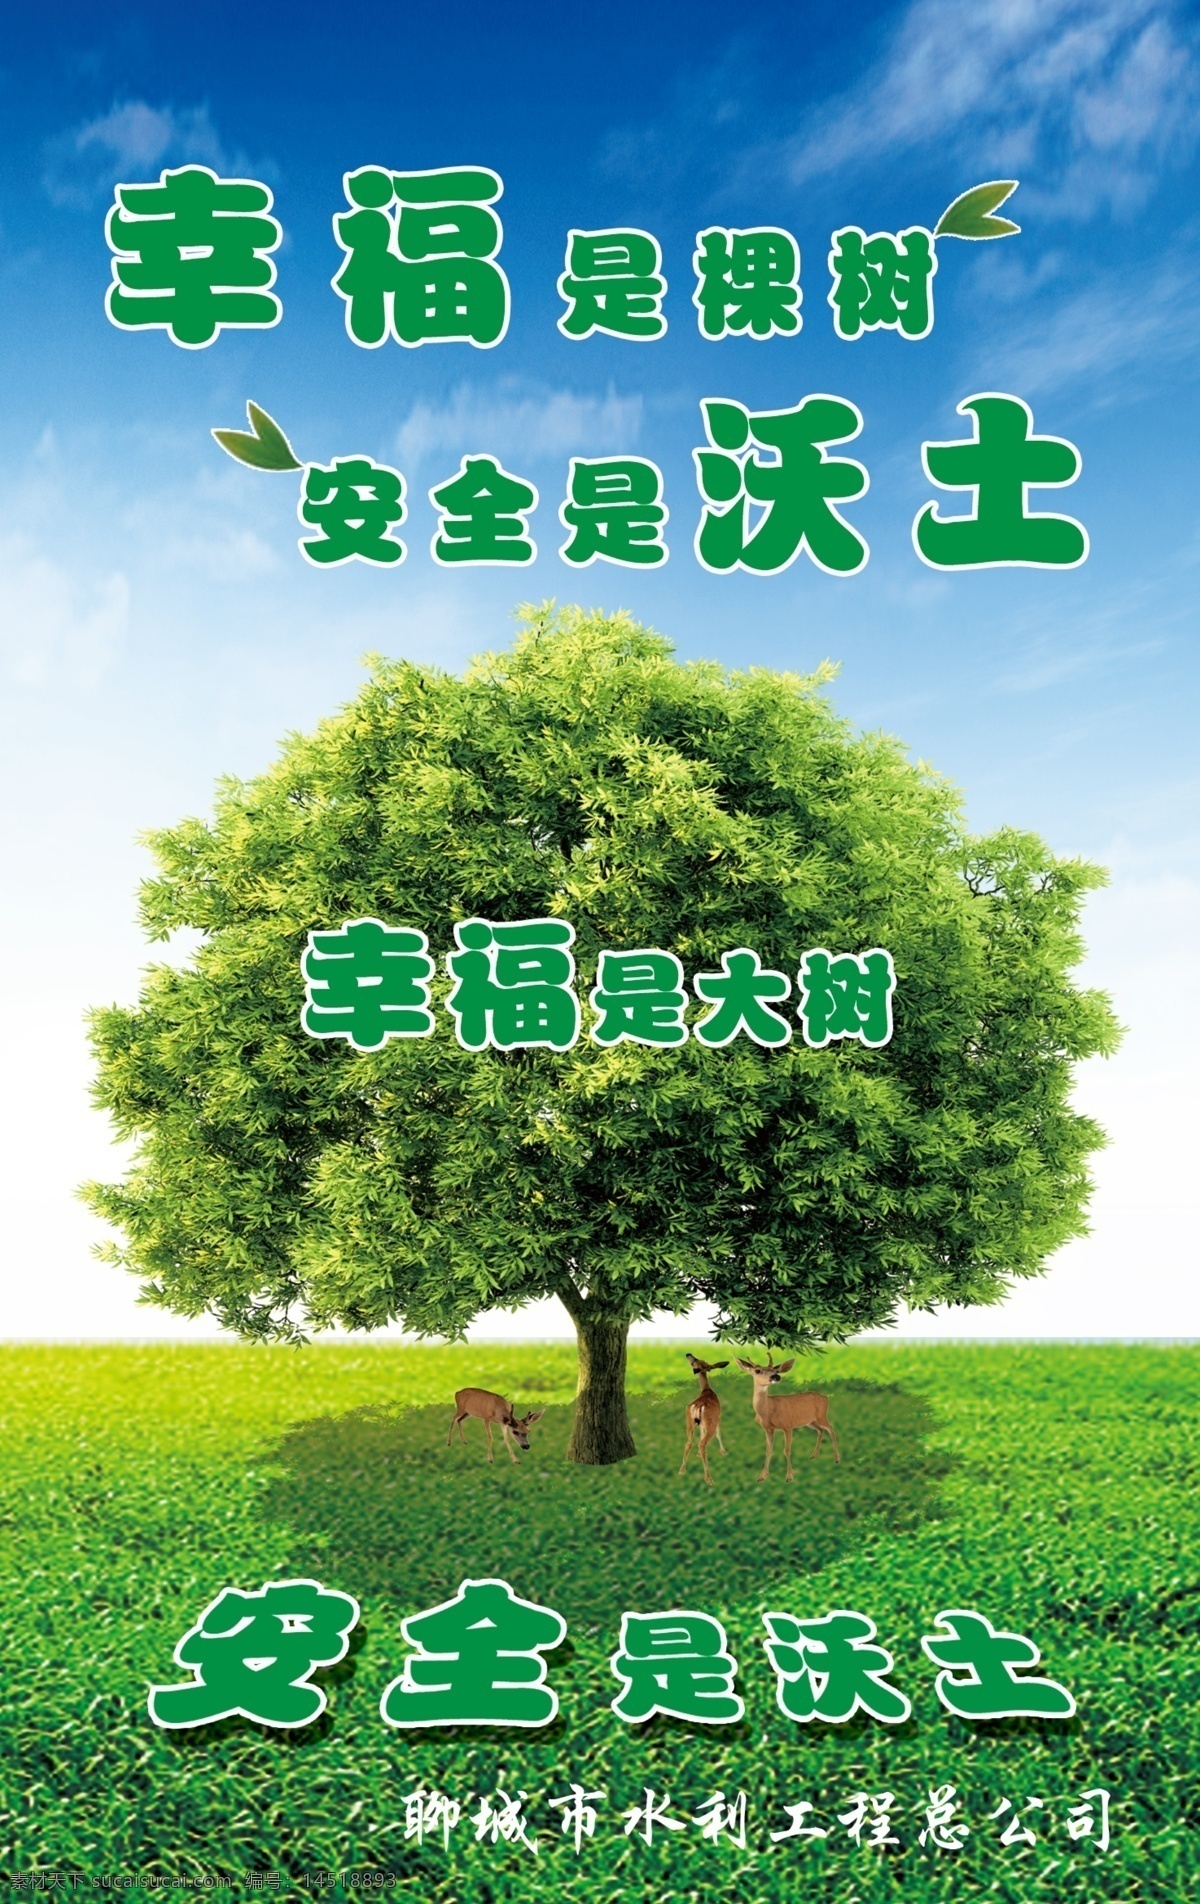 安全沃土 安全标语 绿树 树荫 梅花鹿 绿地 蓝天白云 幸福是棵树 安全是沃土 安全生产 展板模板 广告设计模板 源文件